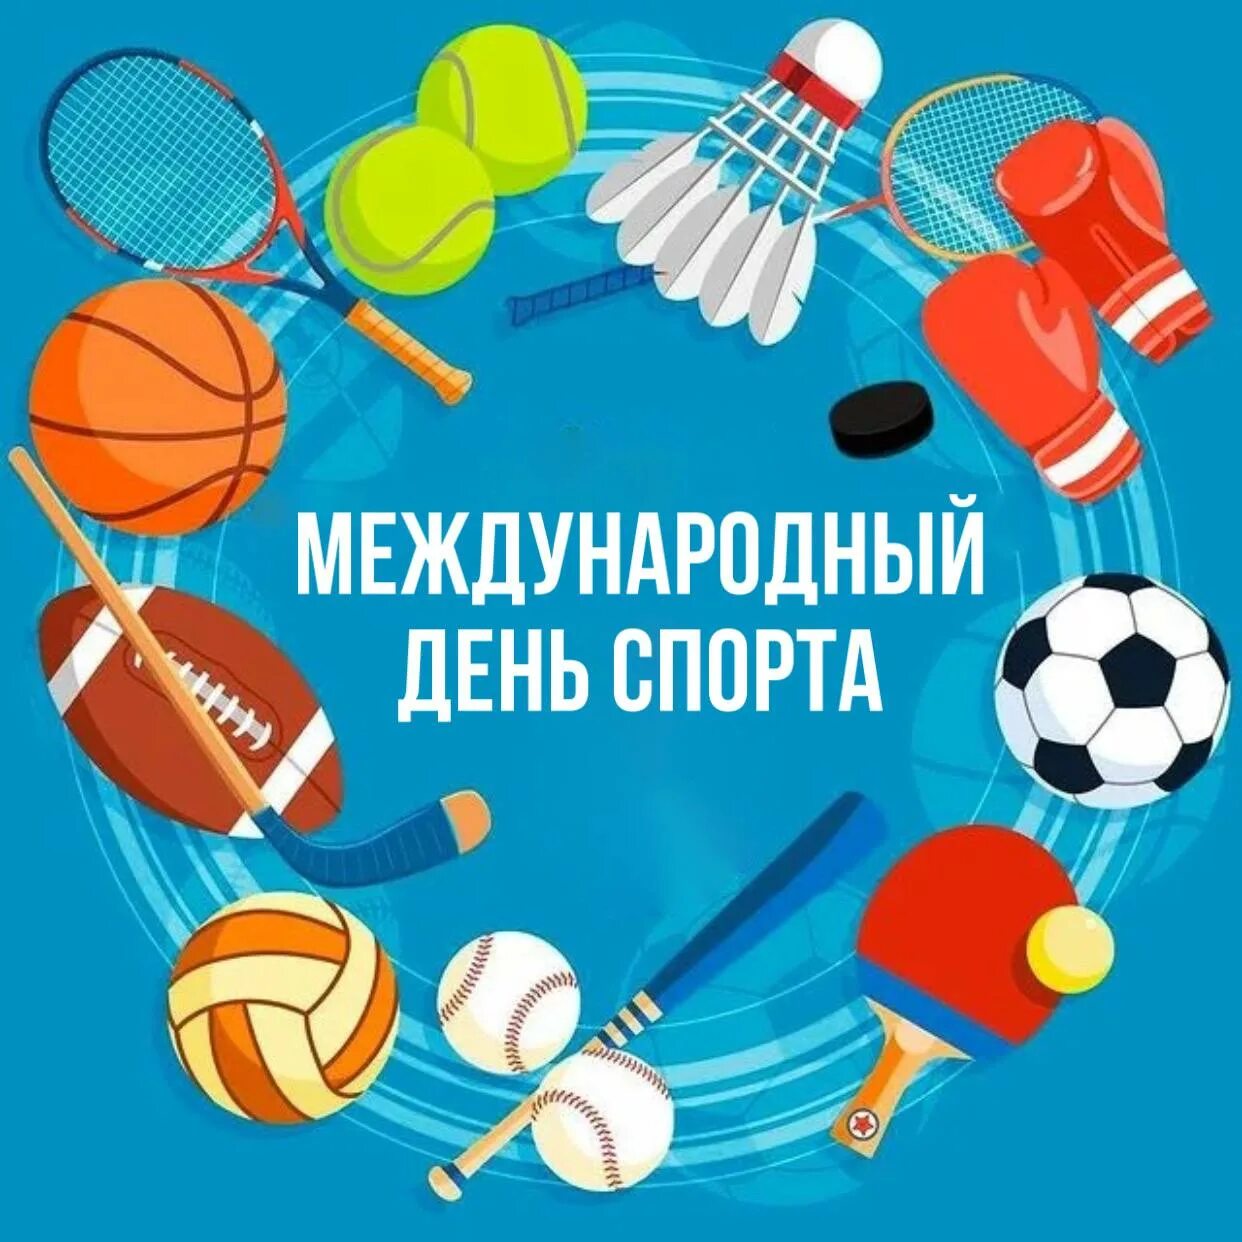 6 апреля международный день спорта. Международный день спорта.